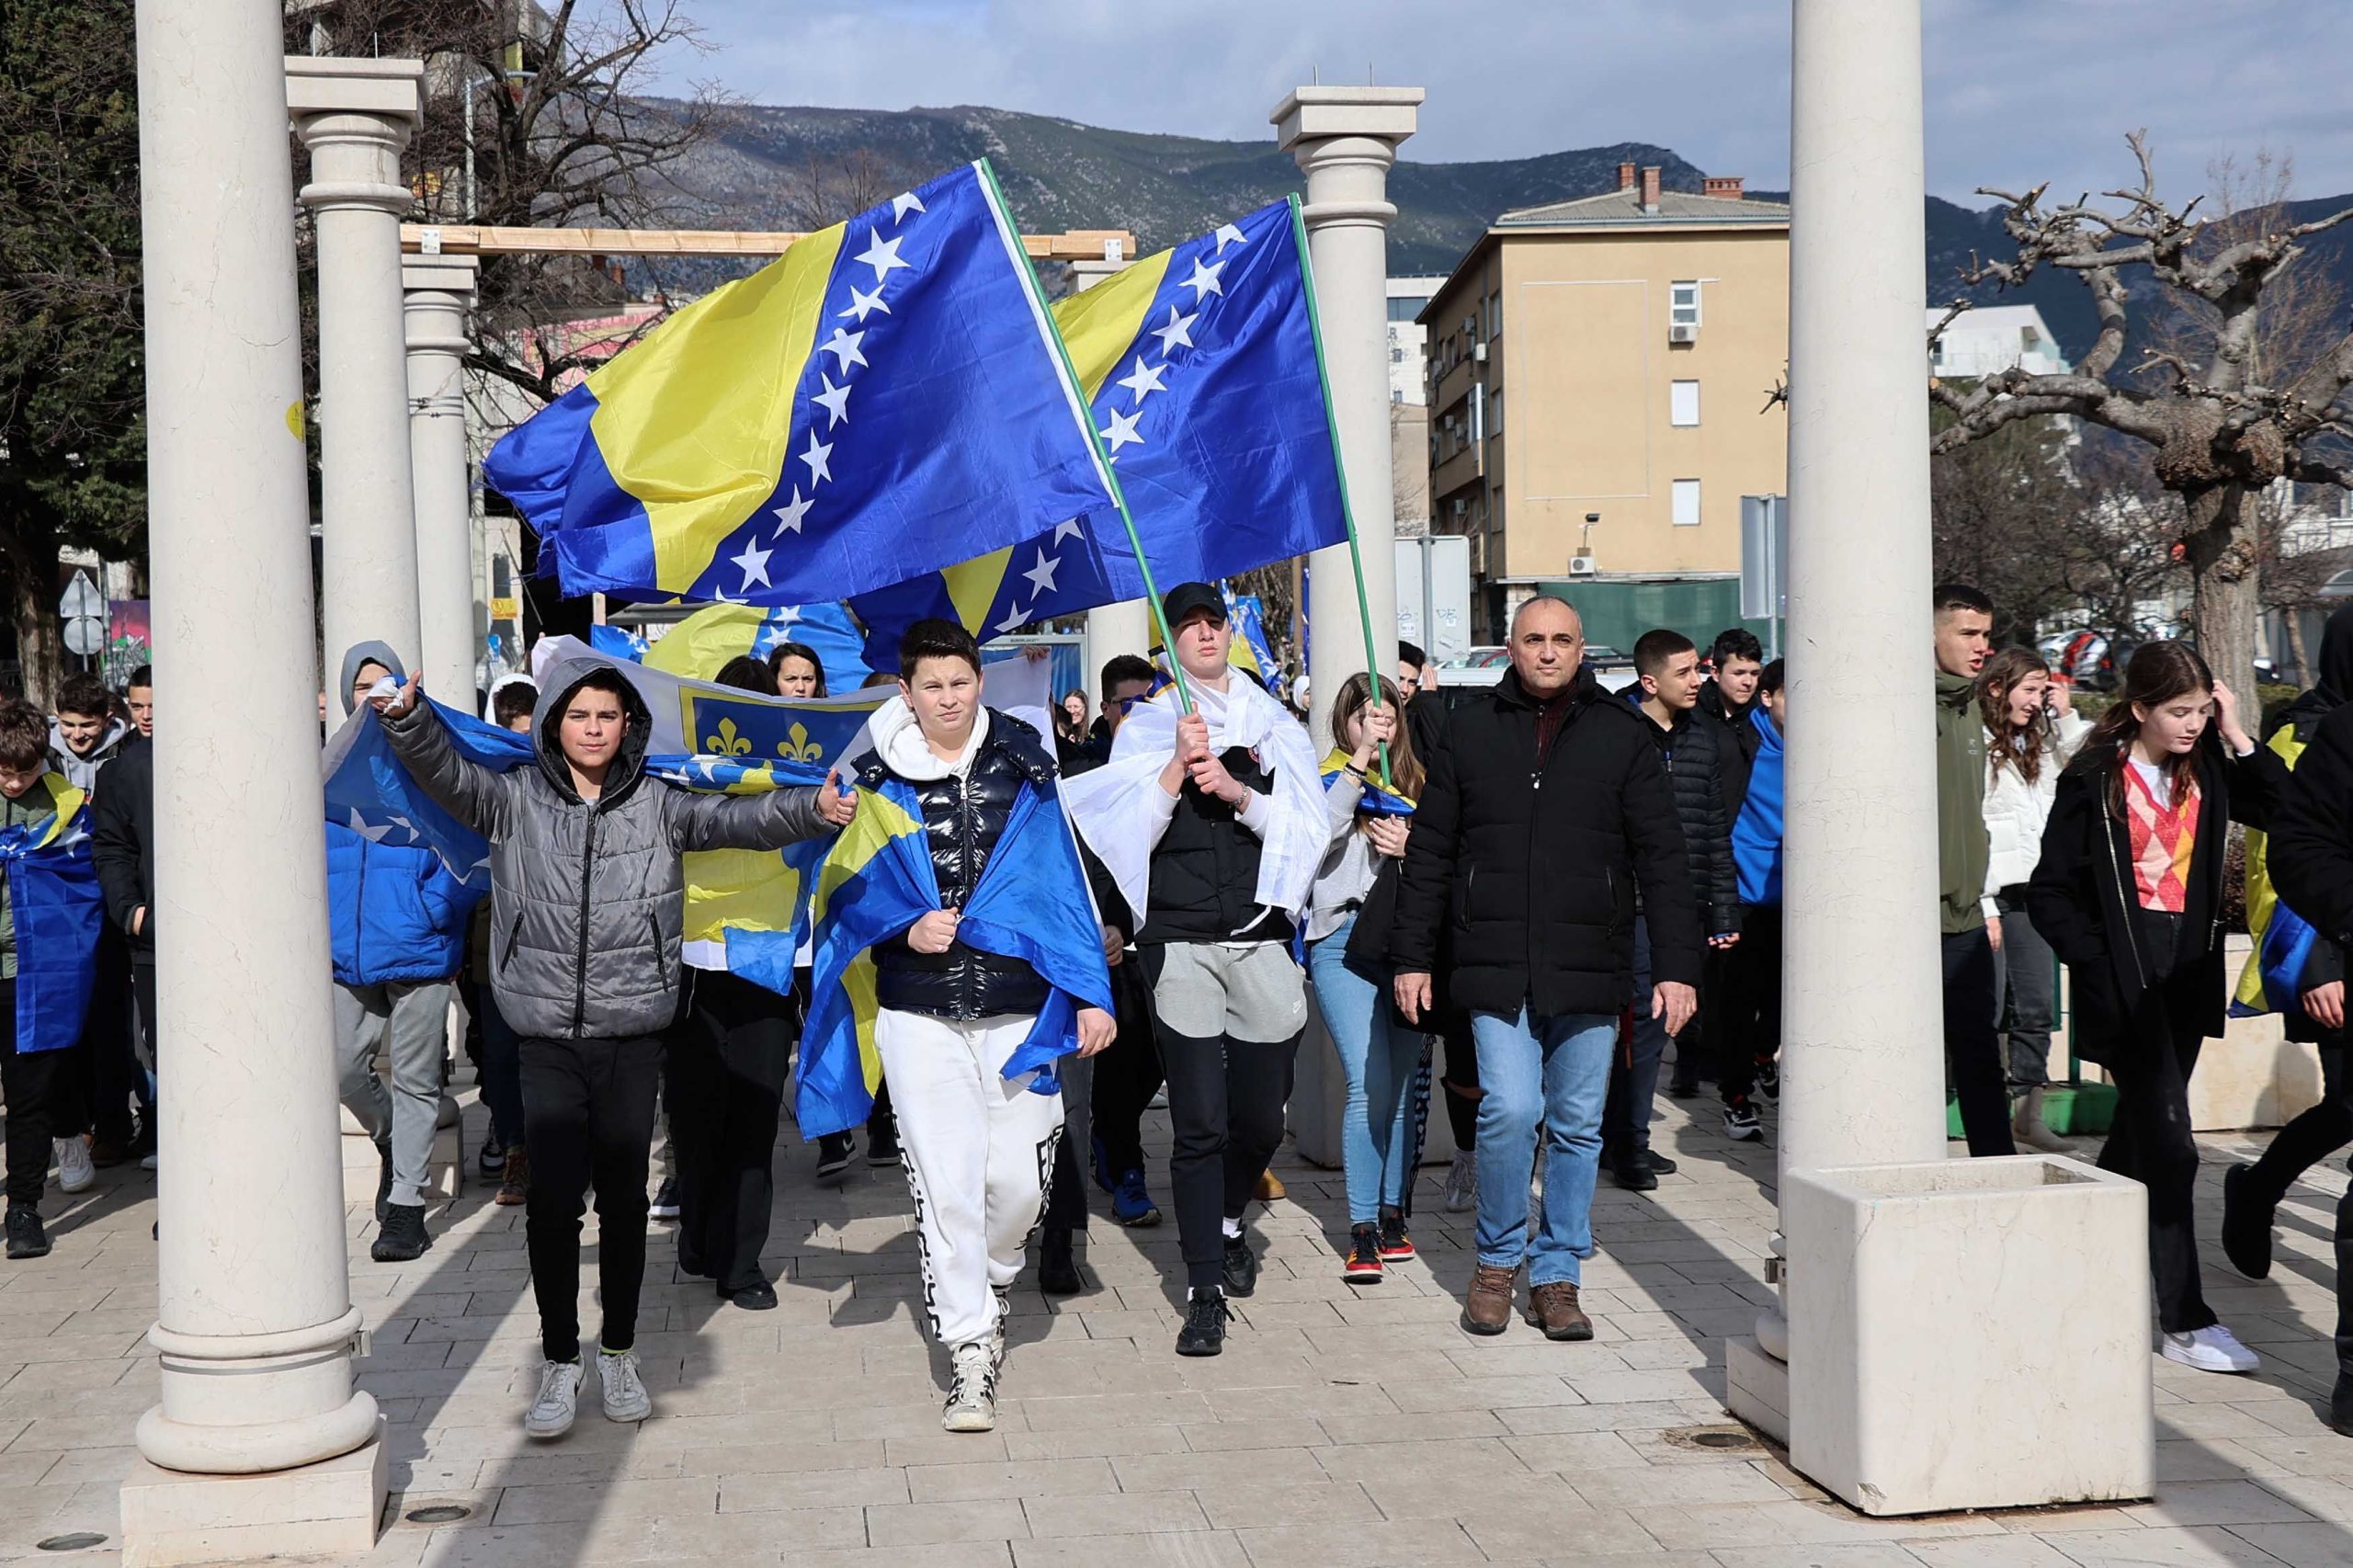 Šetnjom mladih ulicama Mostara počelo obilježavanje Dana neovisnosti BiH